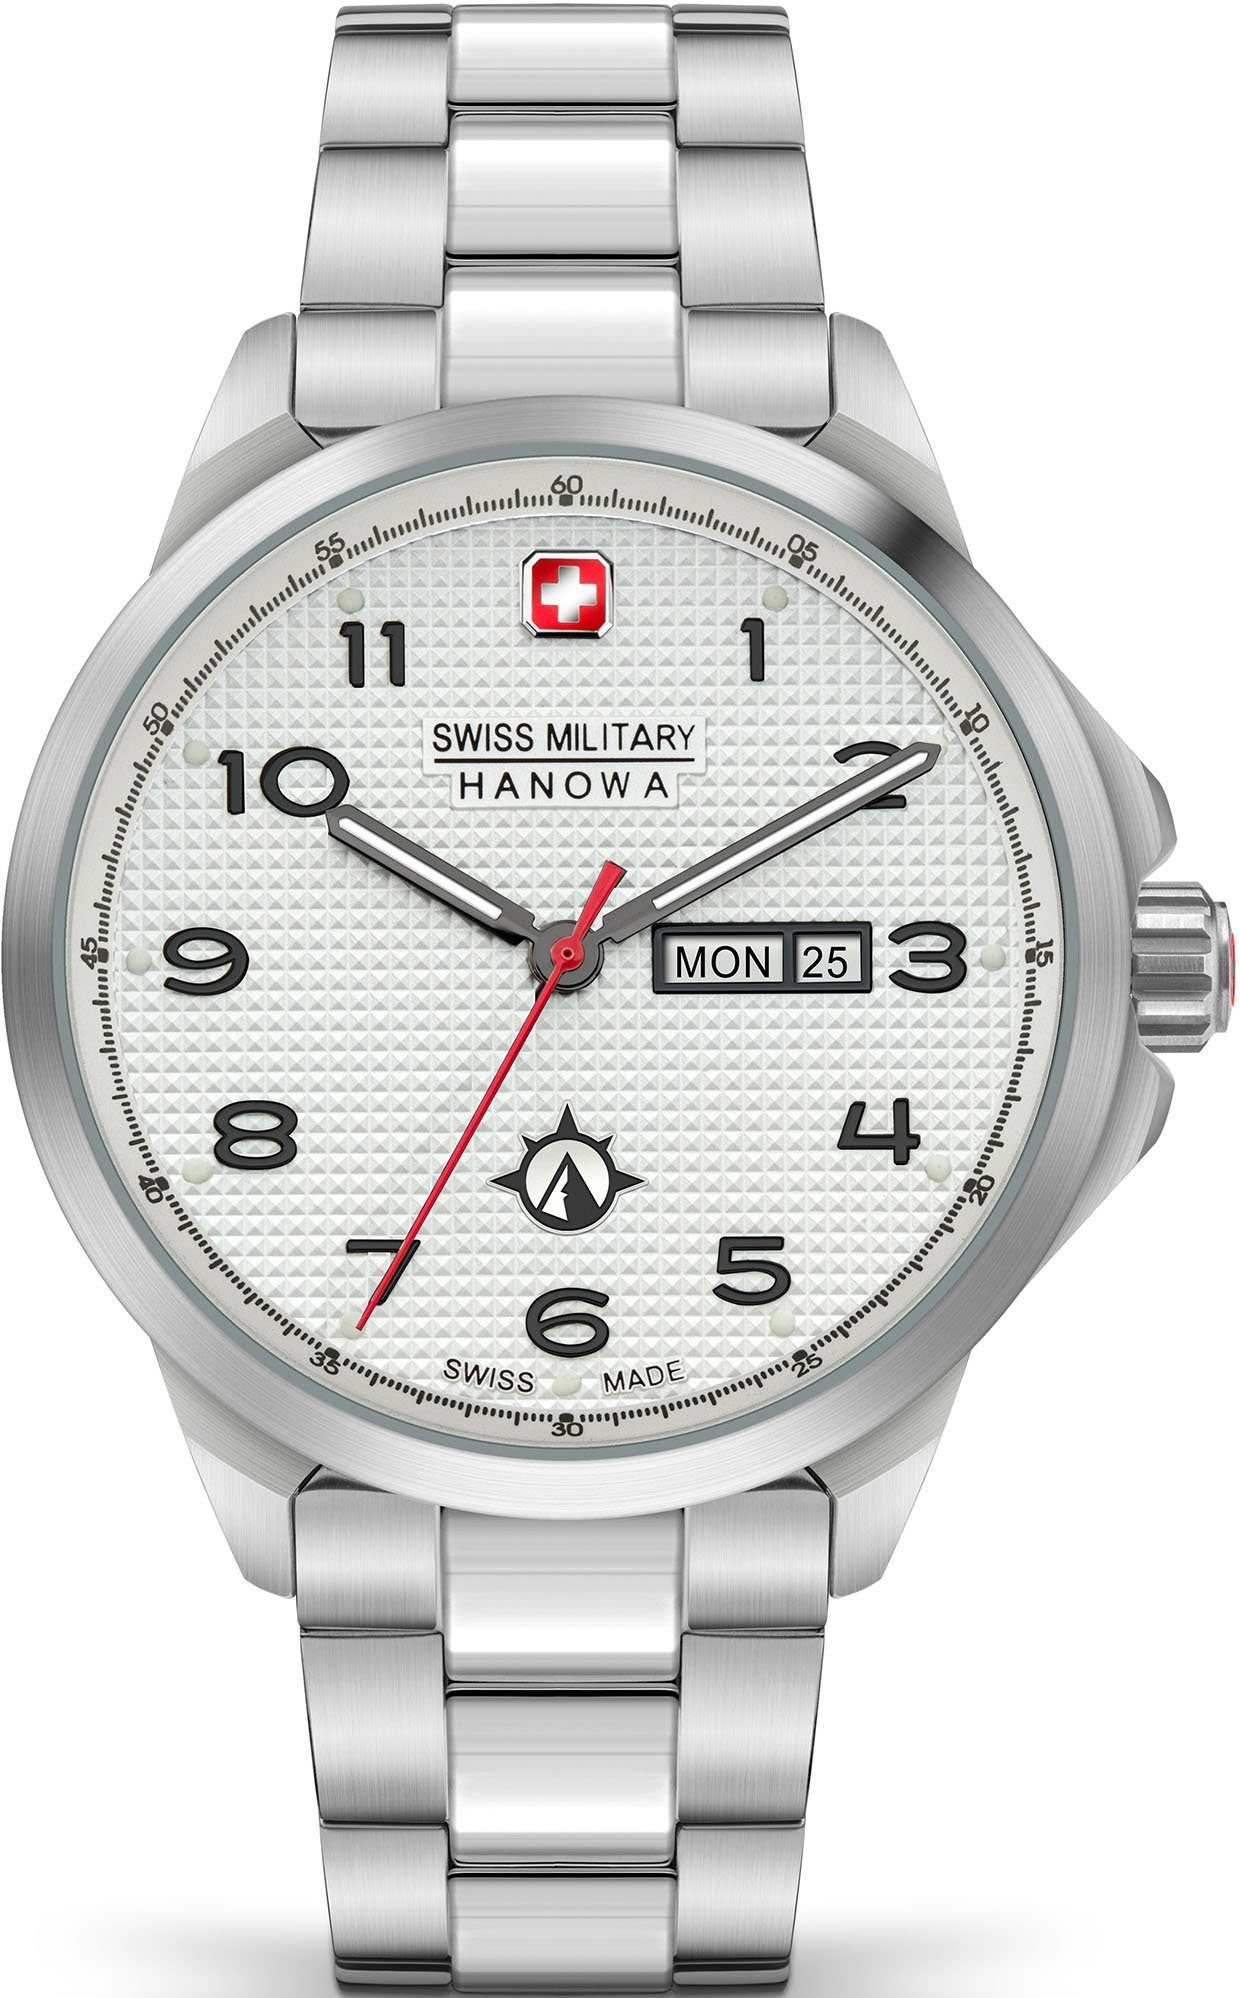 Swiss Military Hanowa Schweizer Uhr PUMA, SMWGH2100302, Quarzuhr, Armbanduhr, Herrenuhr, Swiss Made, Datum, Saphirglas, analog